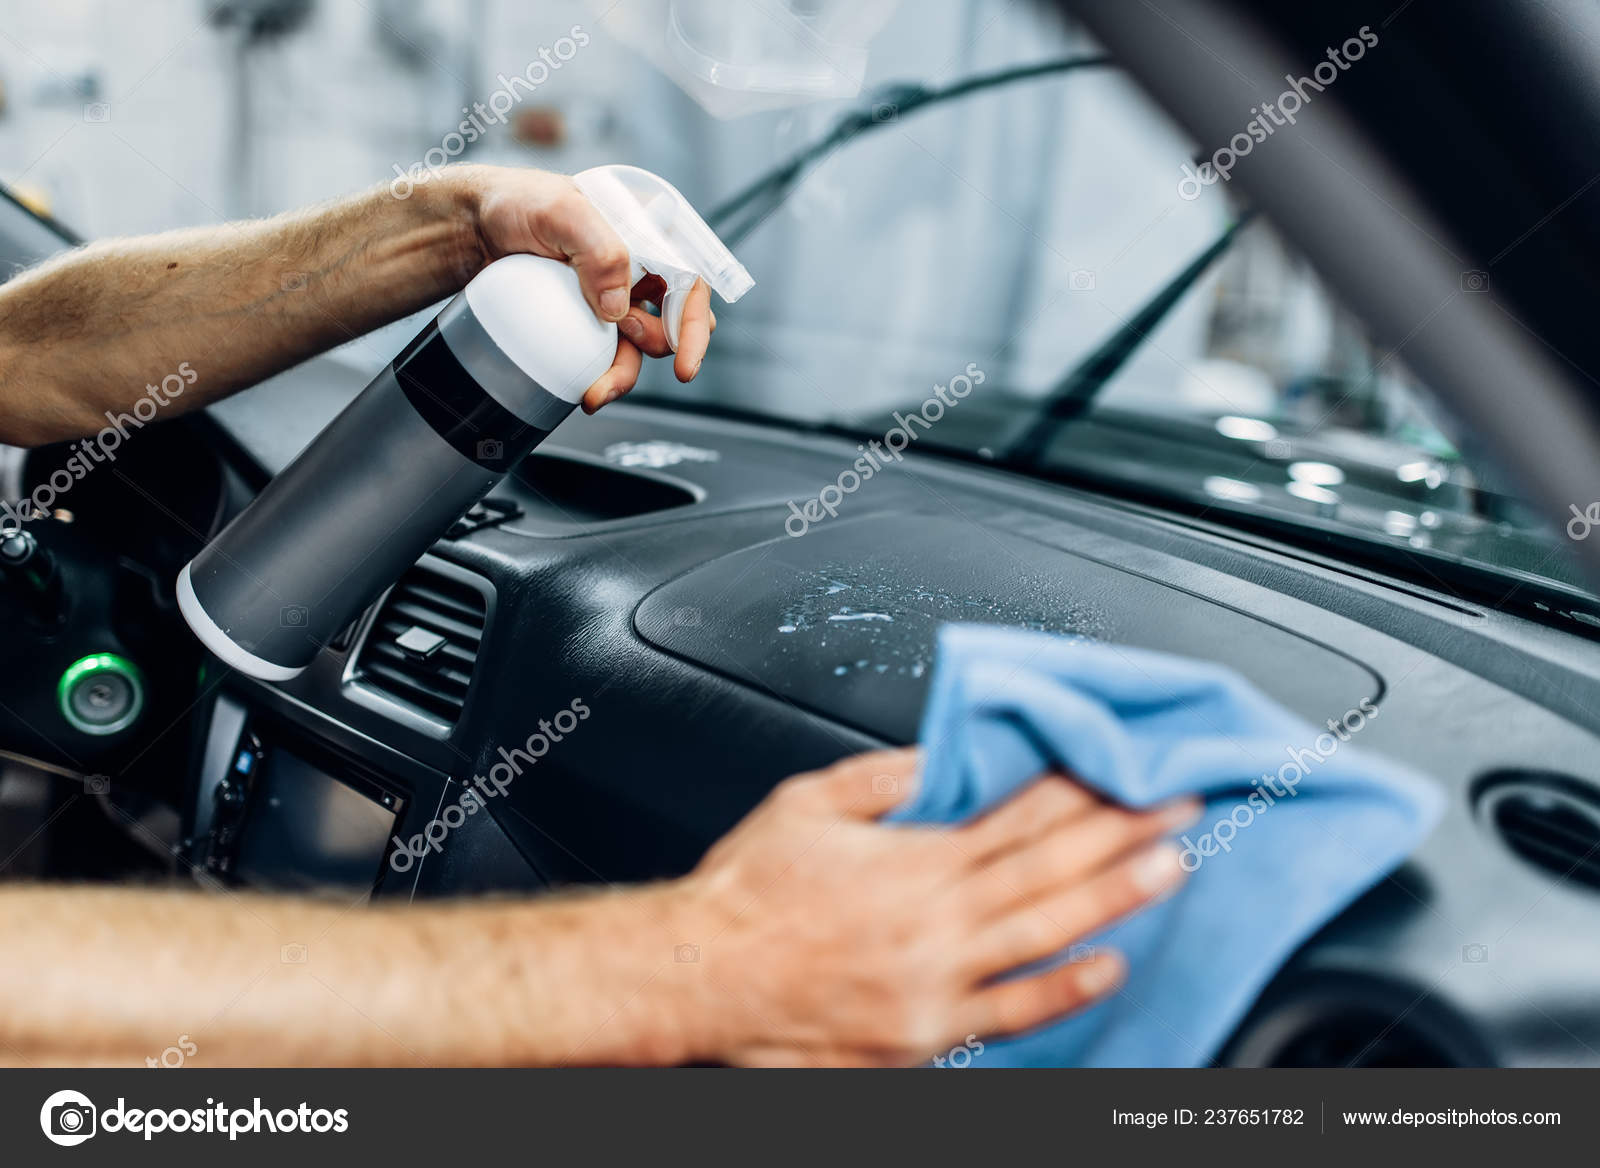 https://st4.depositphotos.com/1006542/23765/i/1600/depositphotos_237651782-stock-photo-auto-detailing-car-interior-carwash.jpg